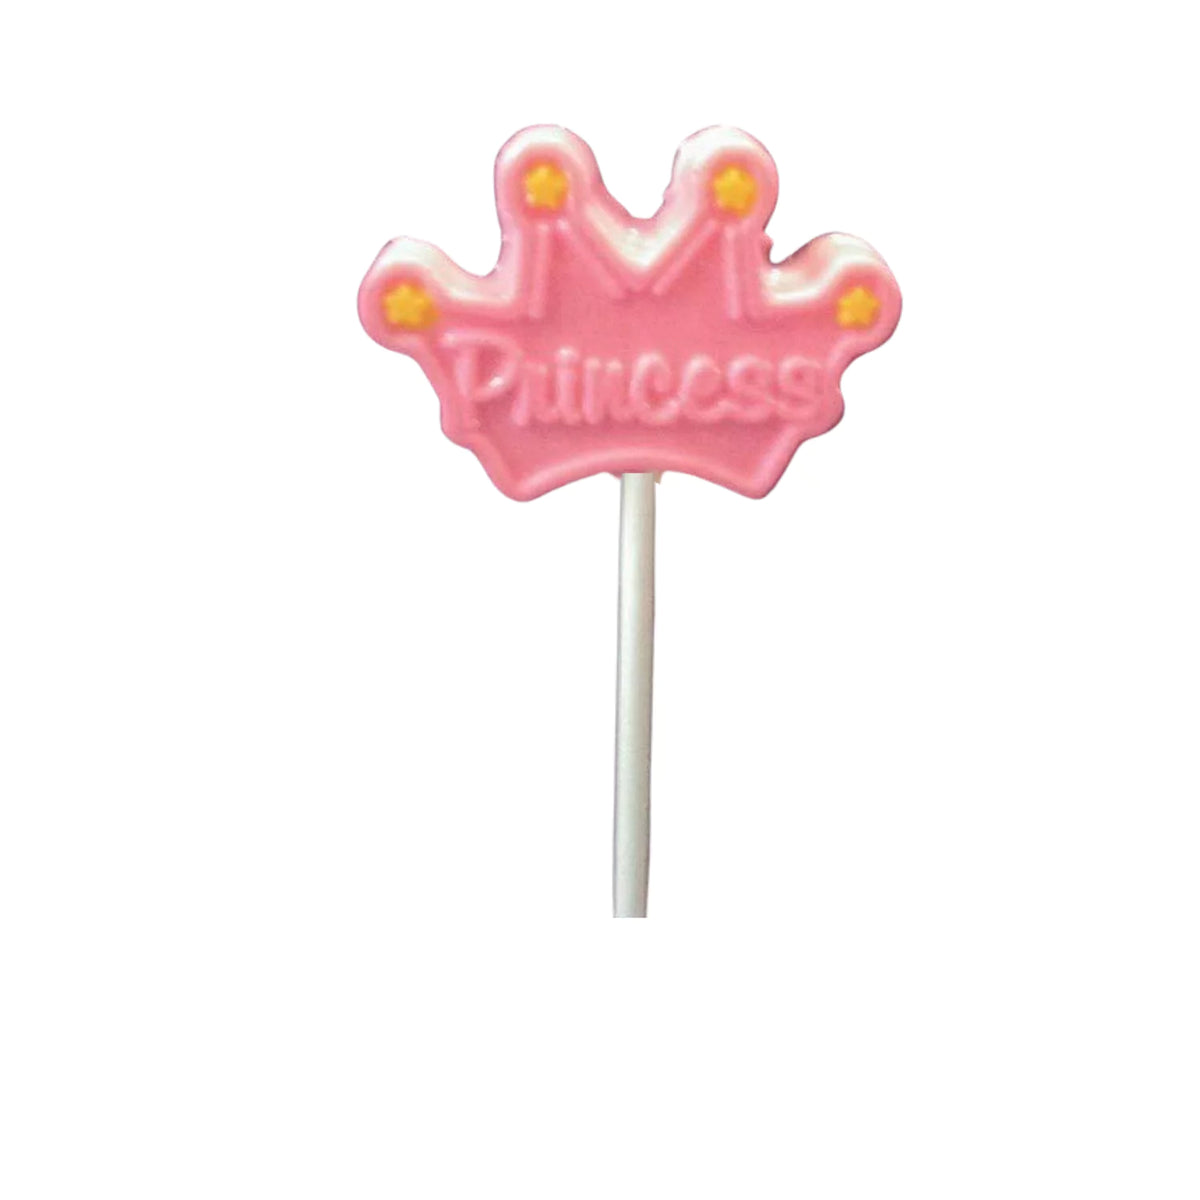 Pink Princess Crown White or Milk Chocolate Lollipop Sucker 2.0oz